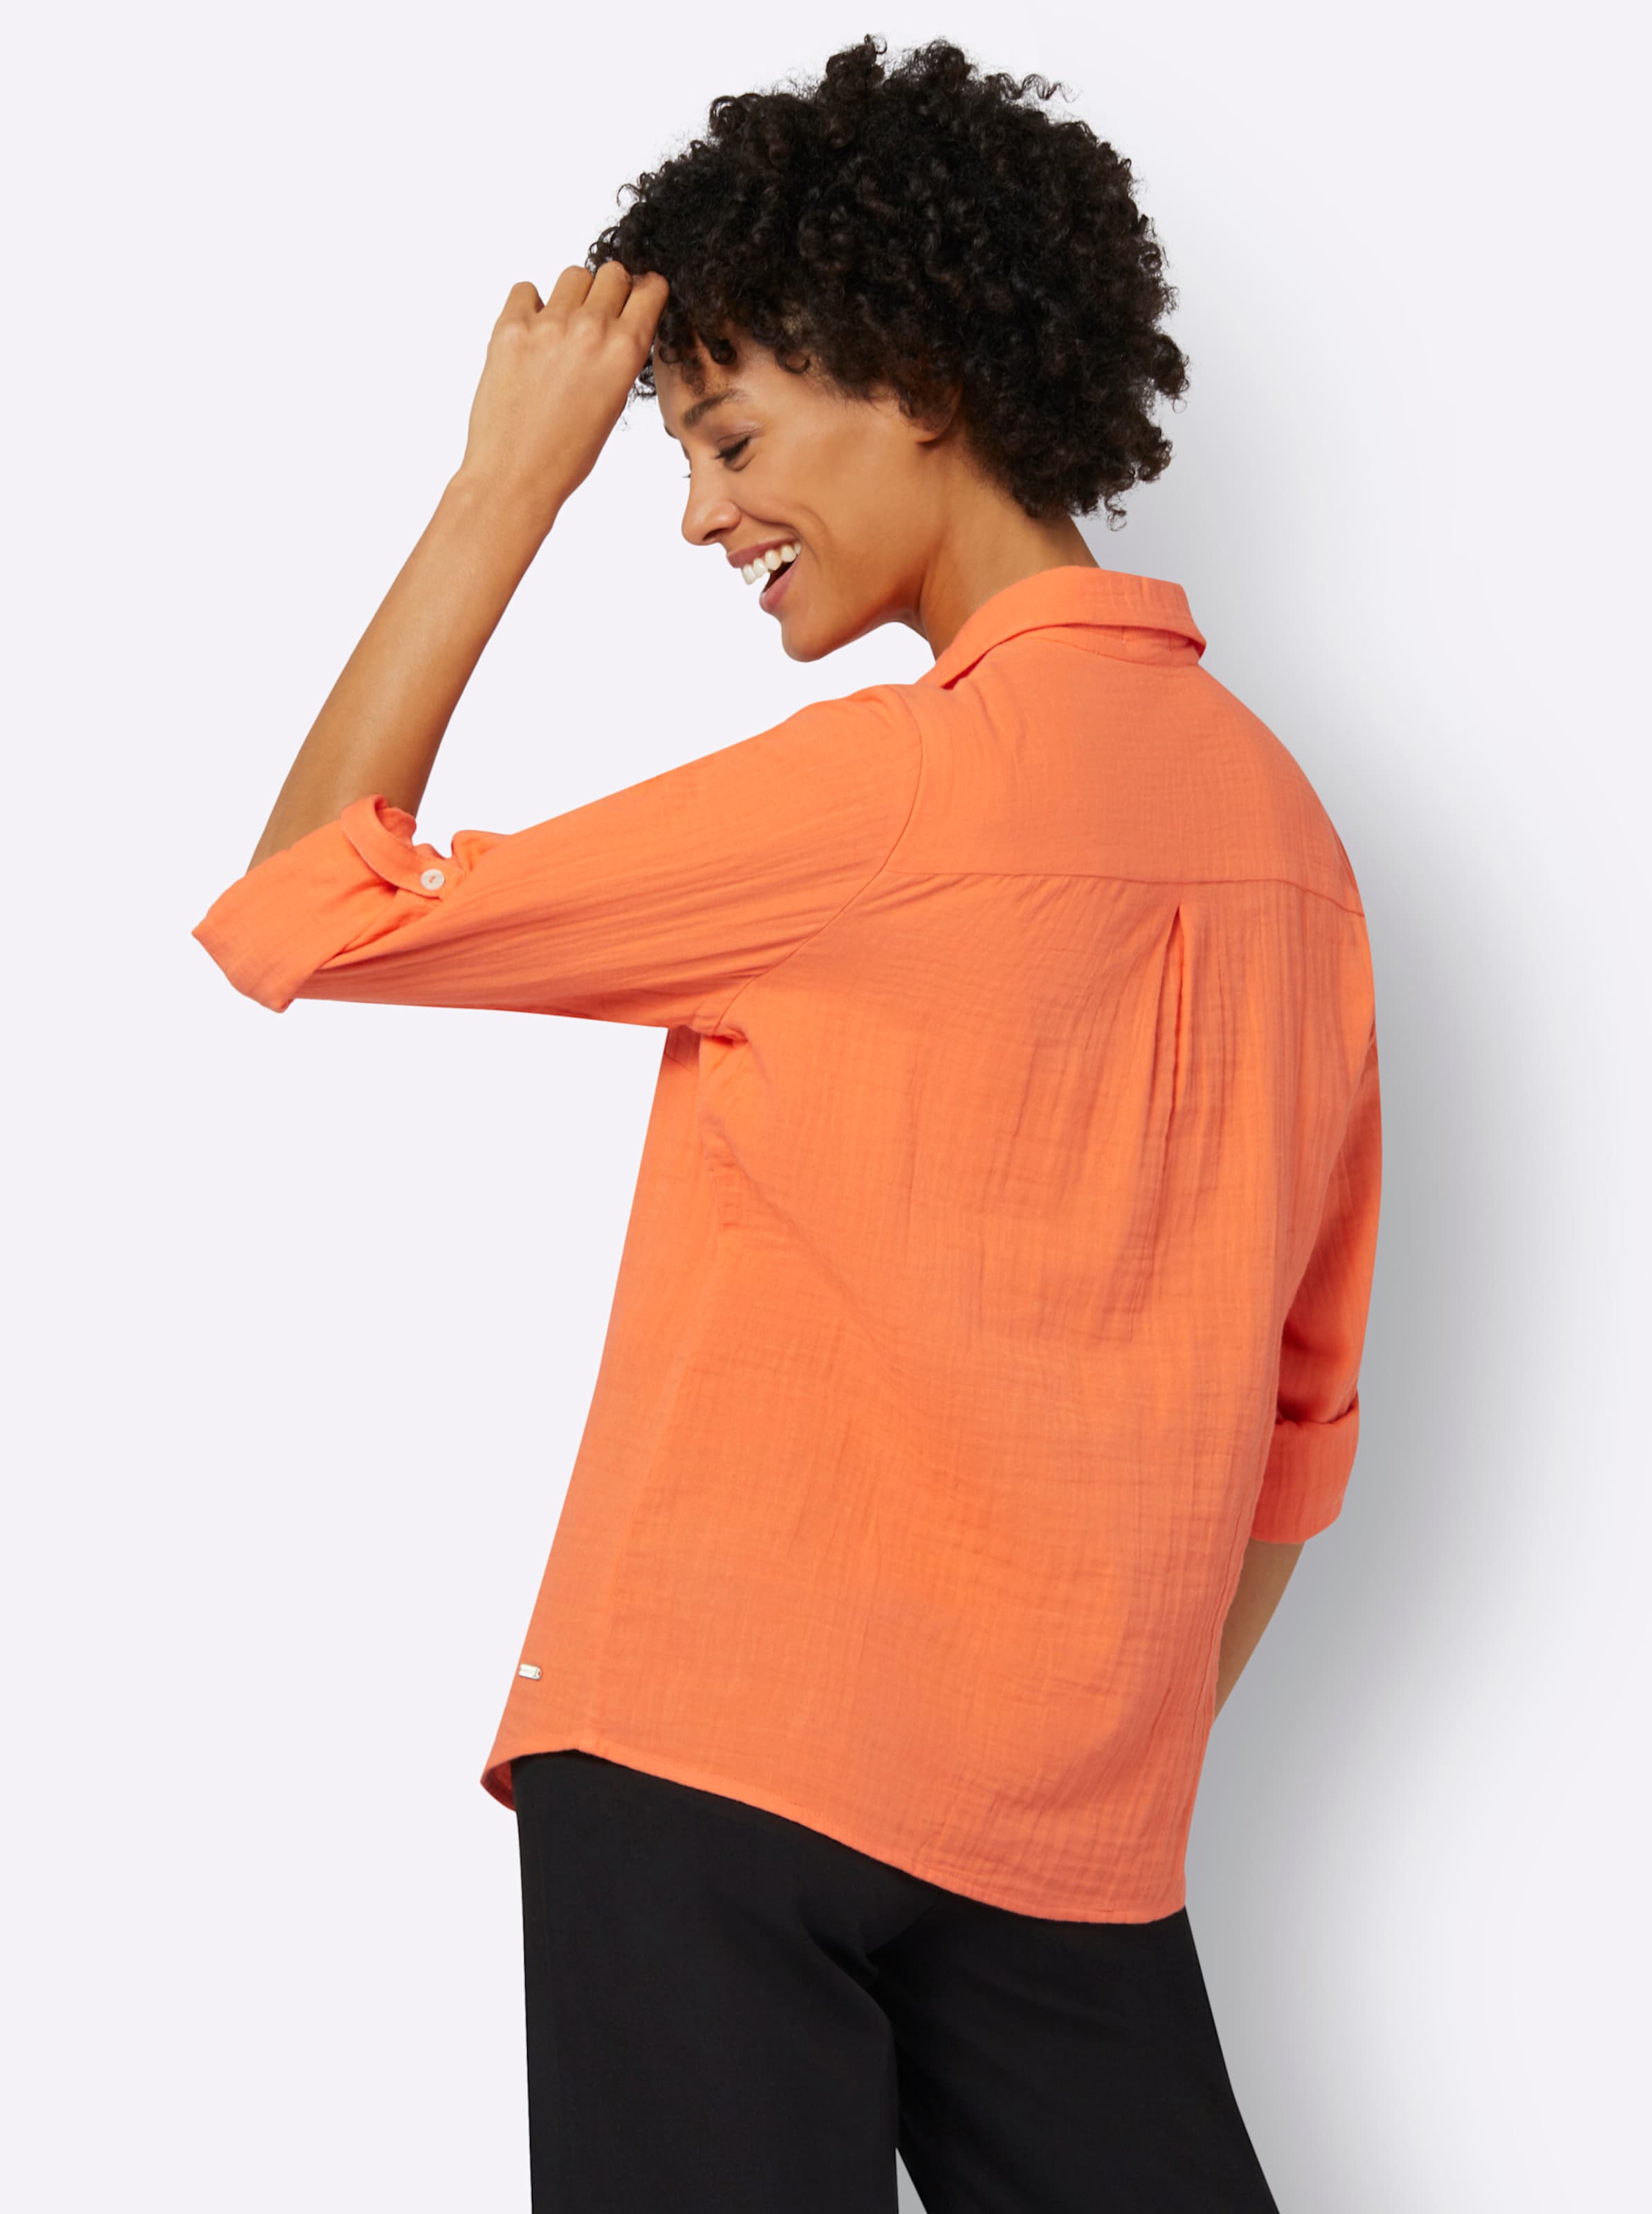 Ein Muss günstig Kaufen-Bluse in orange von heine. Bluse in orange von heine <![CDATA[Bluse in luftiger, dezent strukturierter Musselin-Qualität. Mit Reverskragen, Knöpfen in Perlmutt-Optik und abgerundetem Saum. Die Kellerfalte hinten sorgt für schmeichelnde Weite. Lange Är